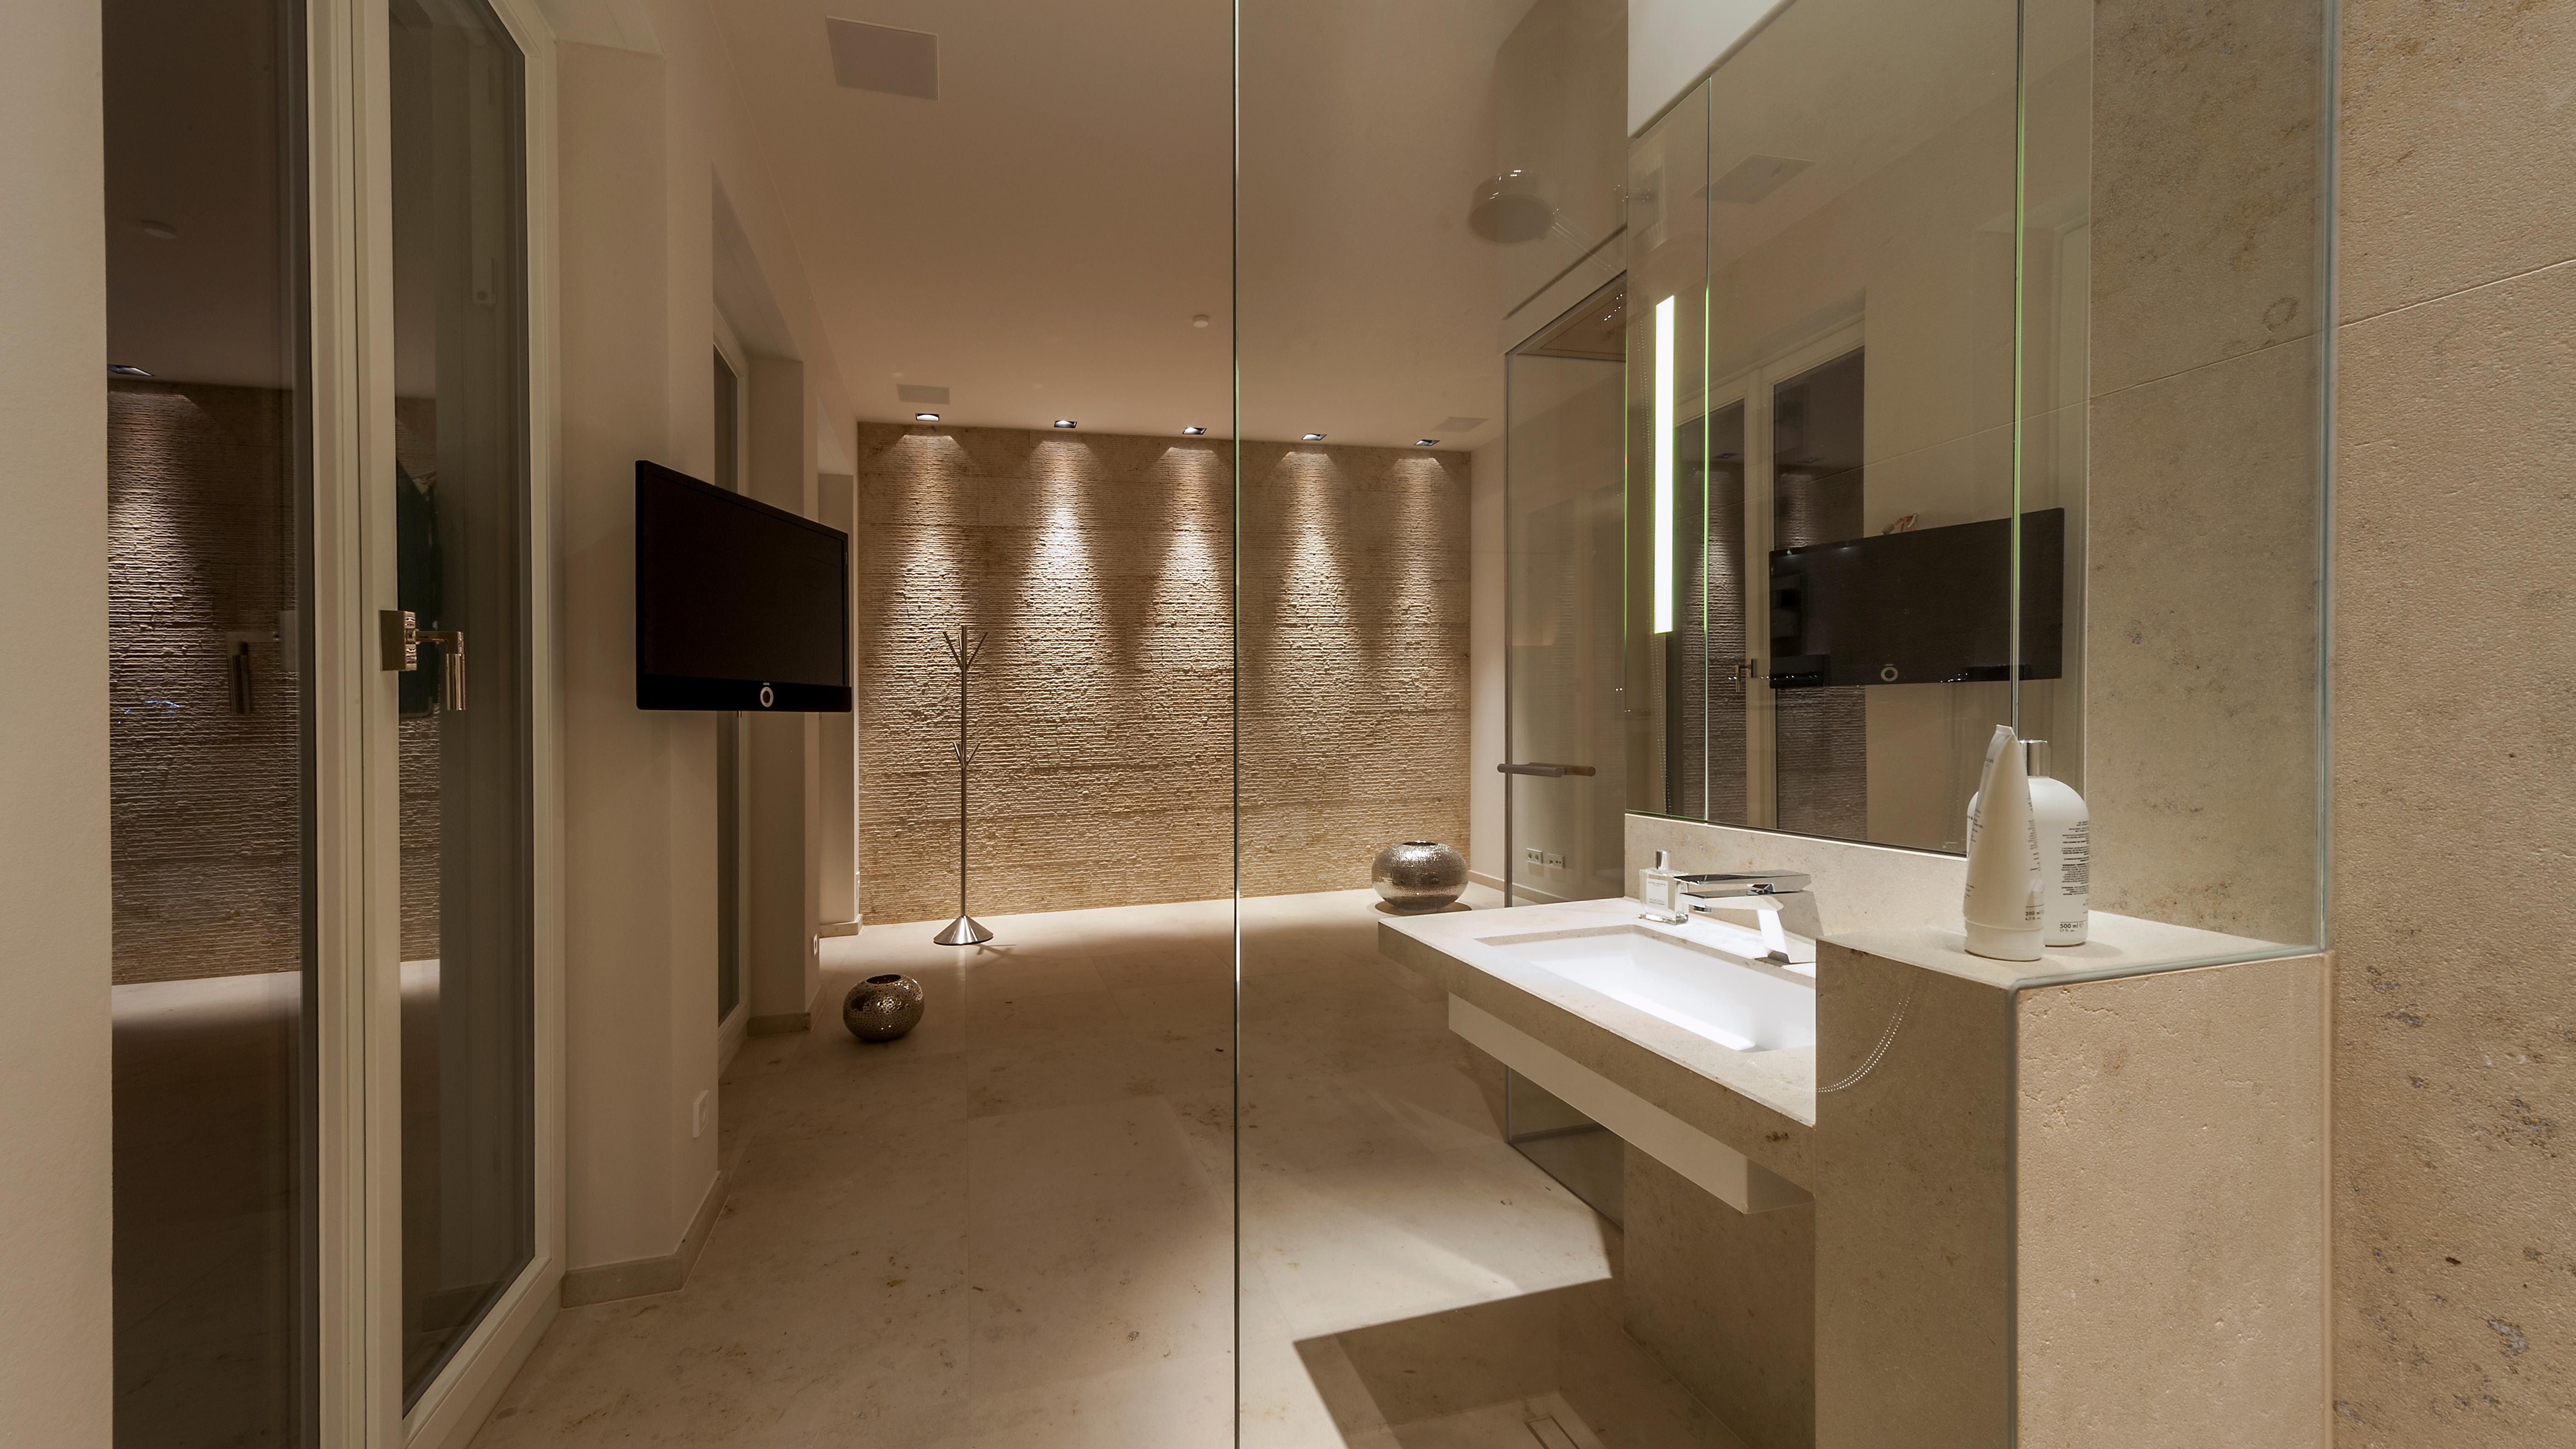 -Anzeige- #bestebadstudios #badezimmer #bad #modernesbadezimmer #dusche #badsanierung